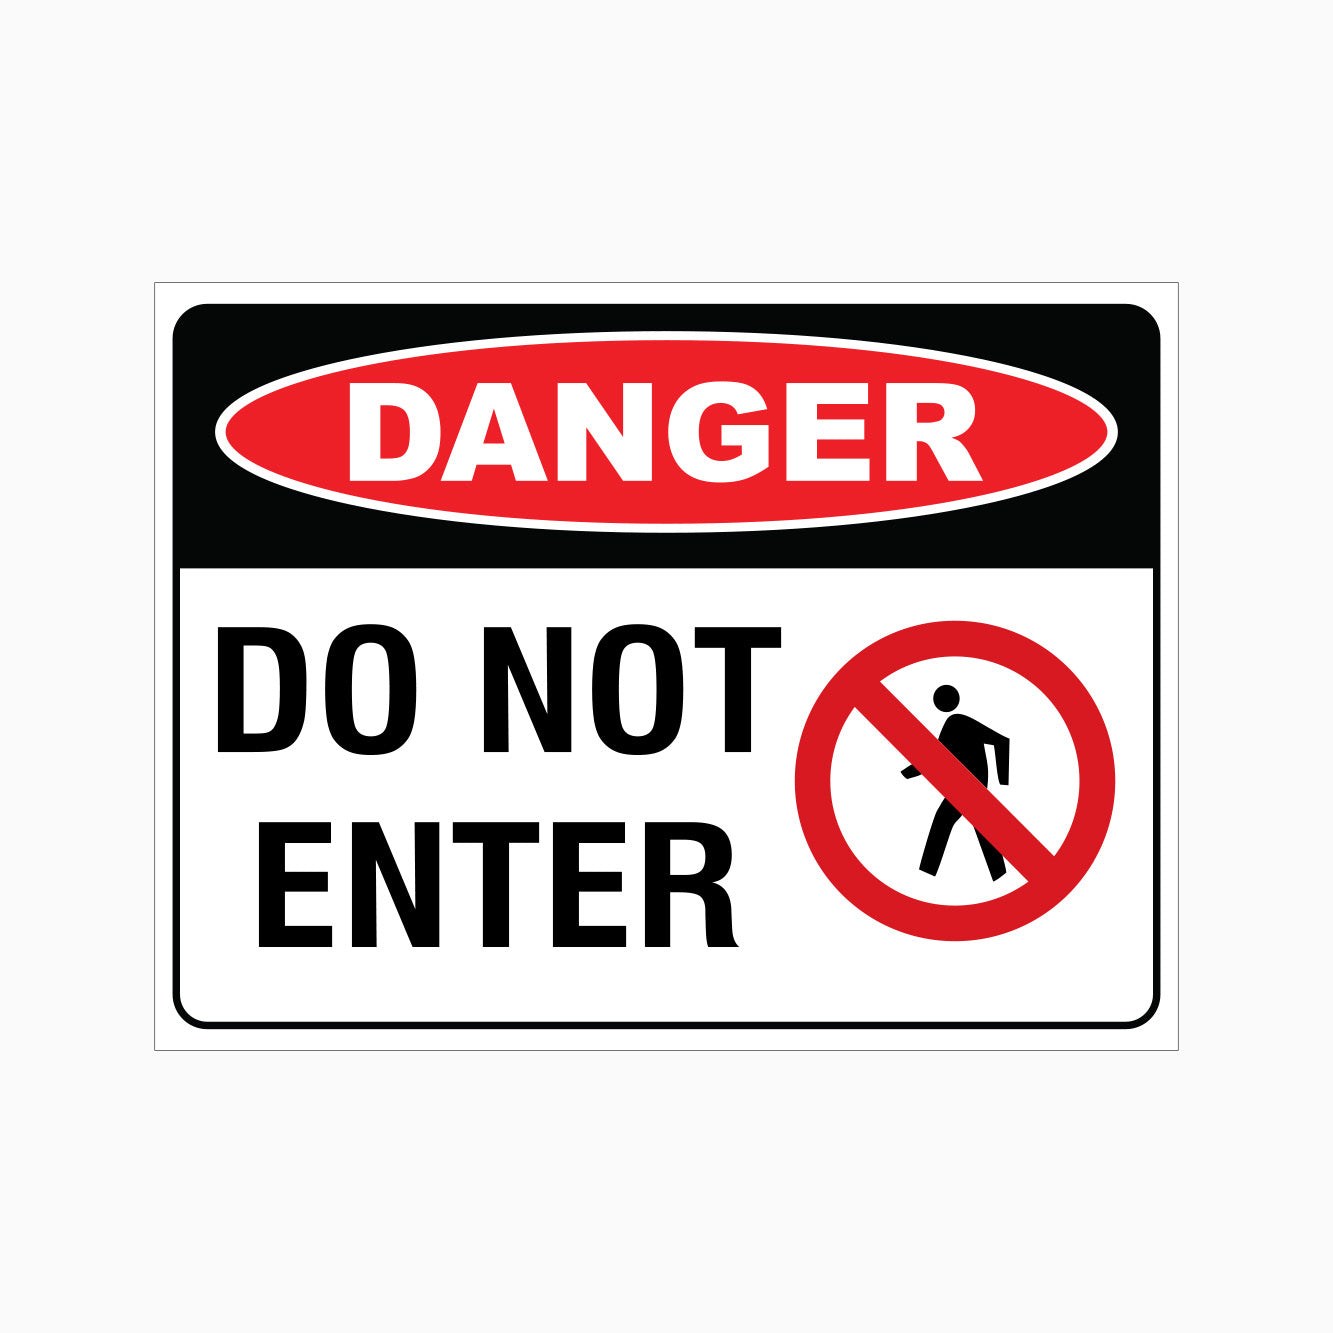 DANGER DO NOT ENTER SIGN - GET SIGNS